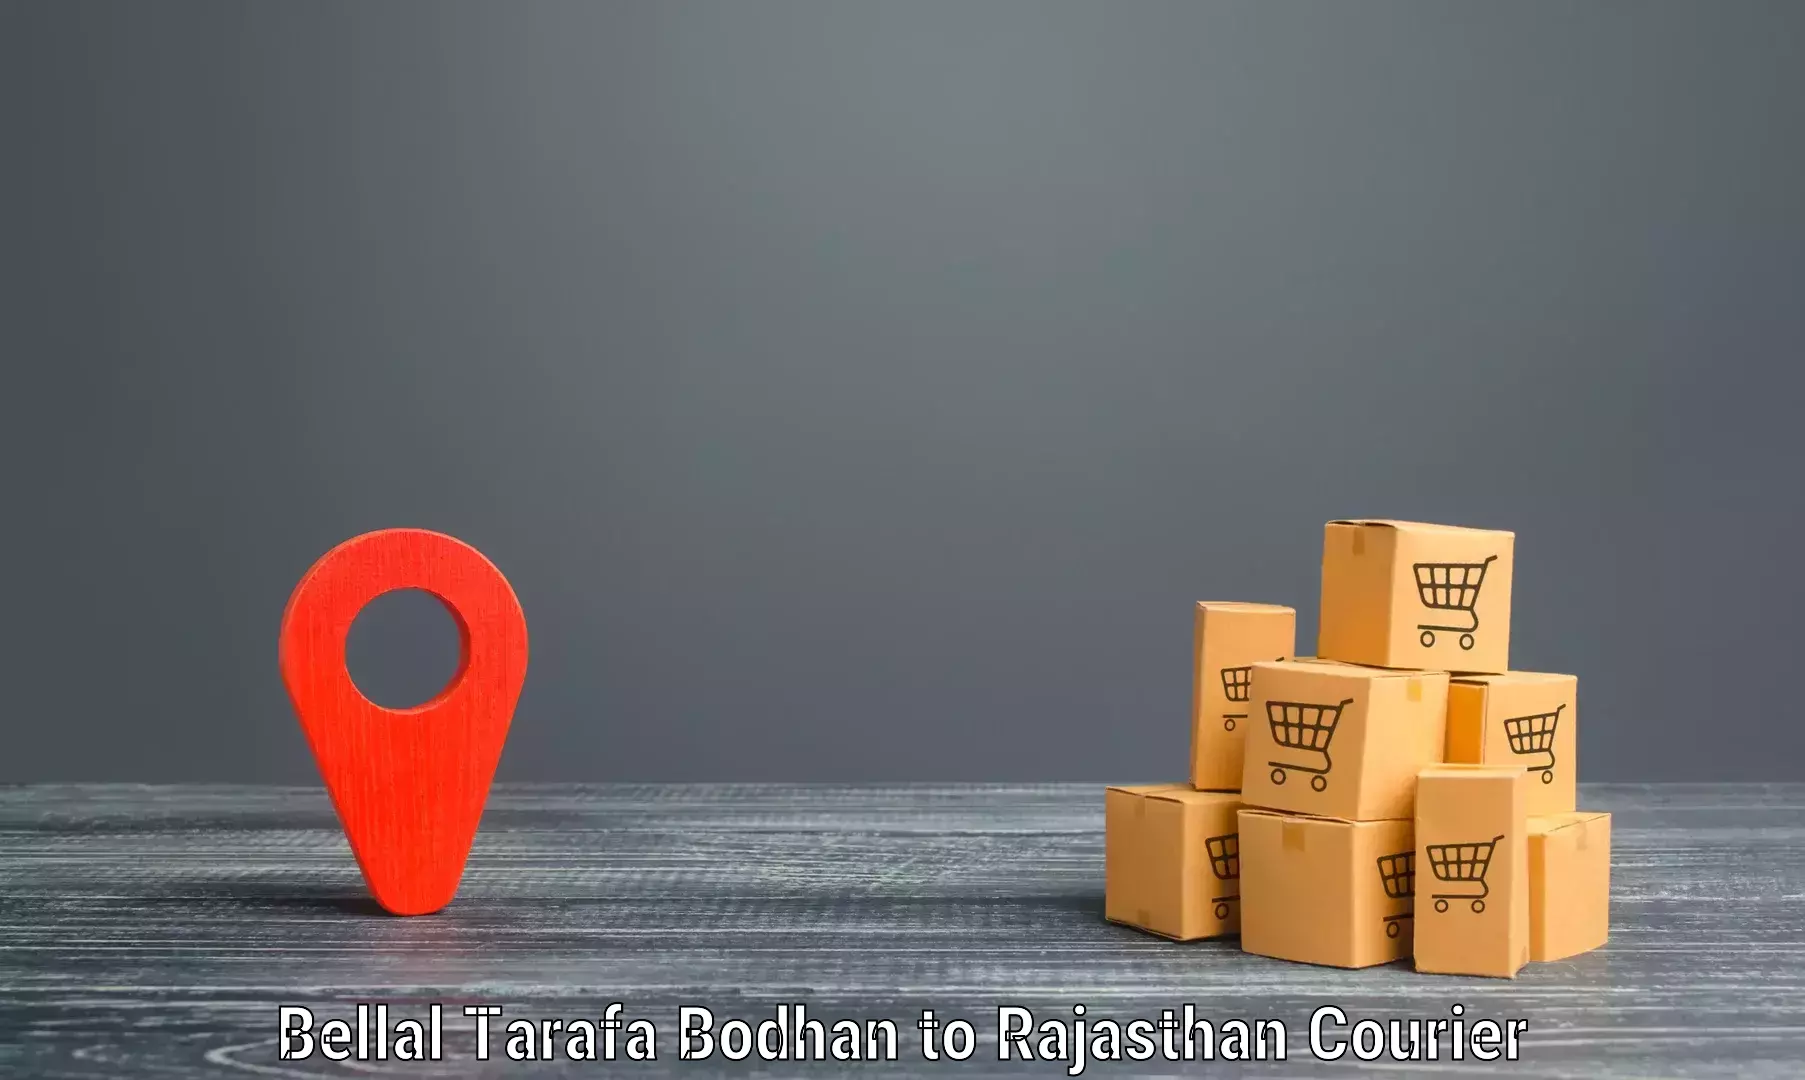 Express delivery network Bellal Tarafa Bodhan to Kalwar